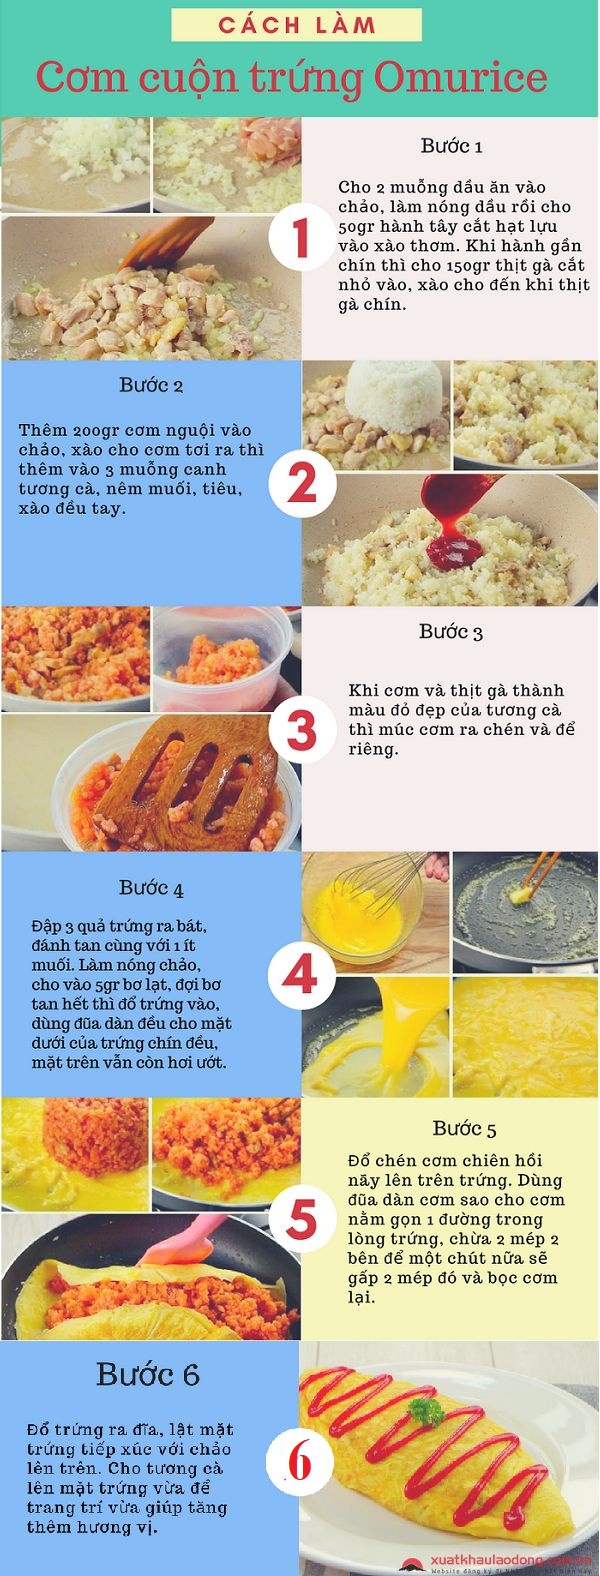 Cách làm cơm cuộn trứng omurice nhật bản